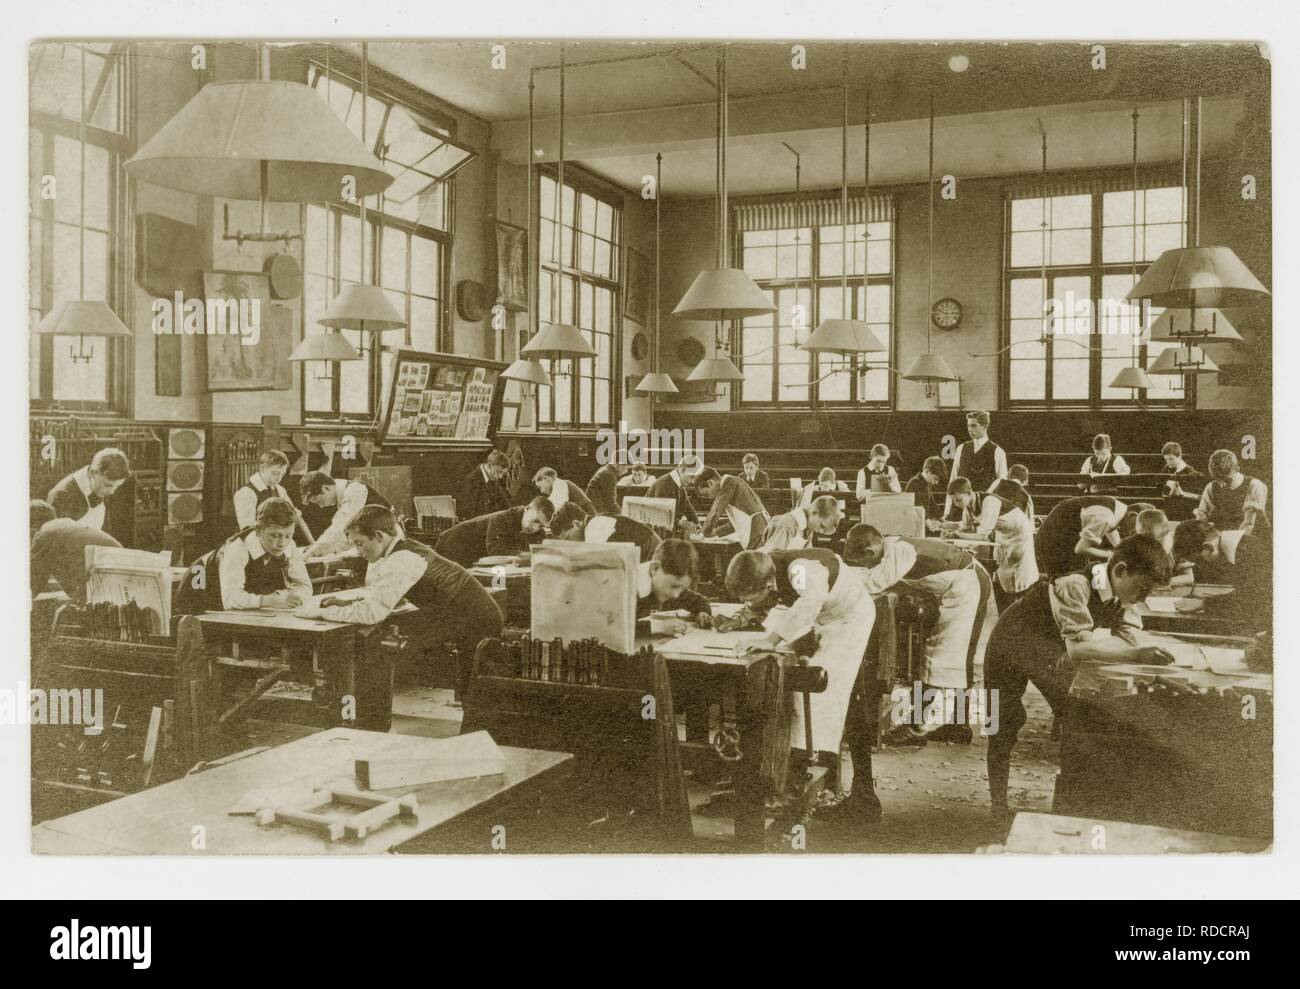 Ursprüngliche Postkarte aus den frühen 1900er Jahren von edwardianischen Schülern, die Pläne für Holzarbeiten in einem Klassenzimmer zeichneten, um 1910, Großbritannien Stockfoto